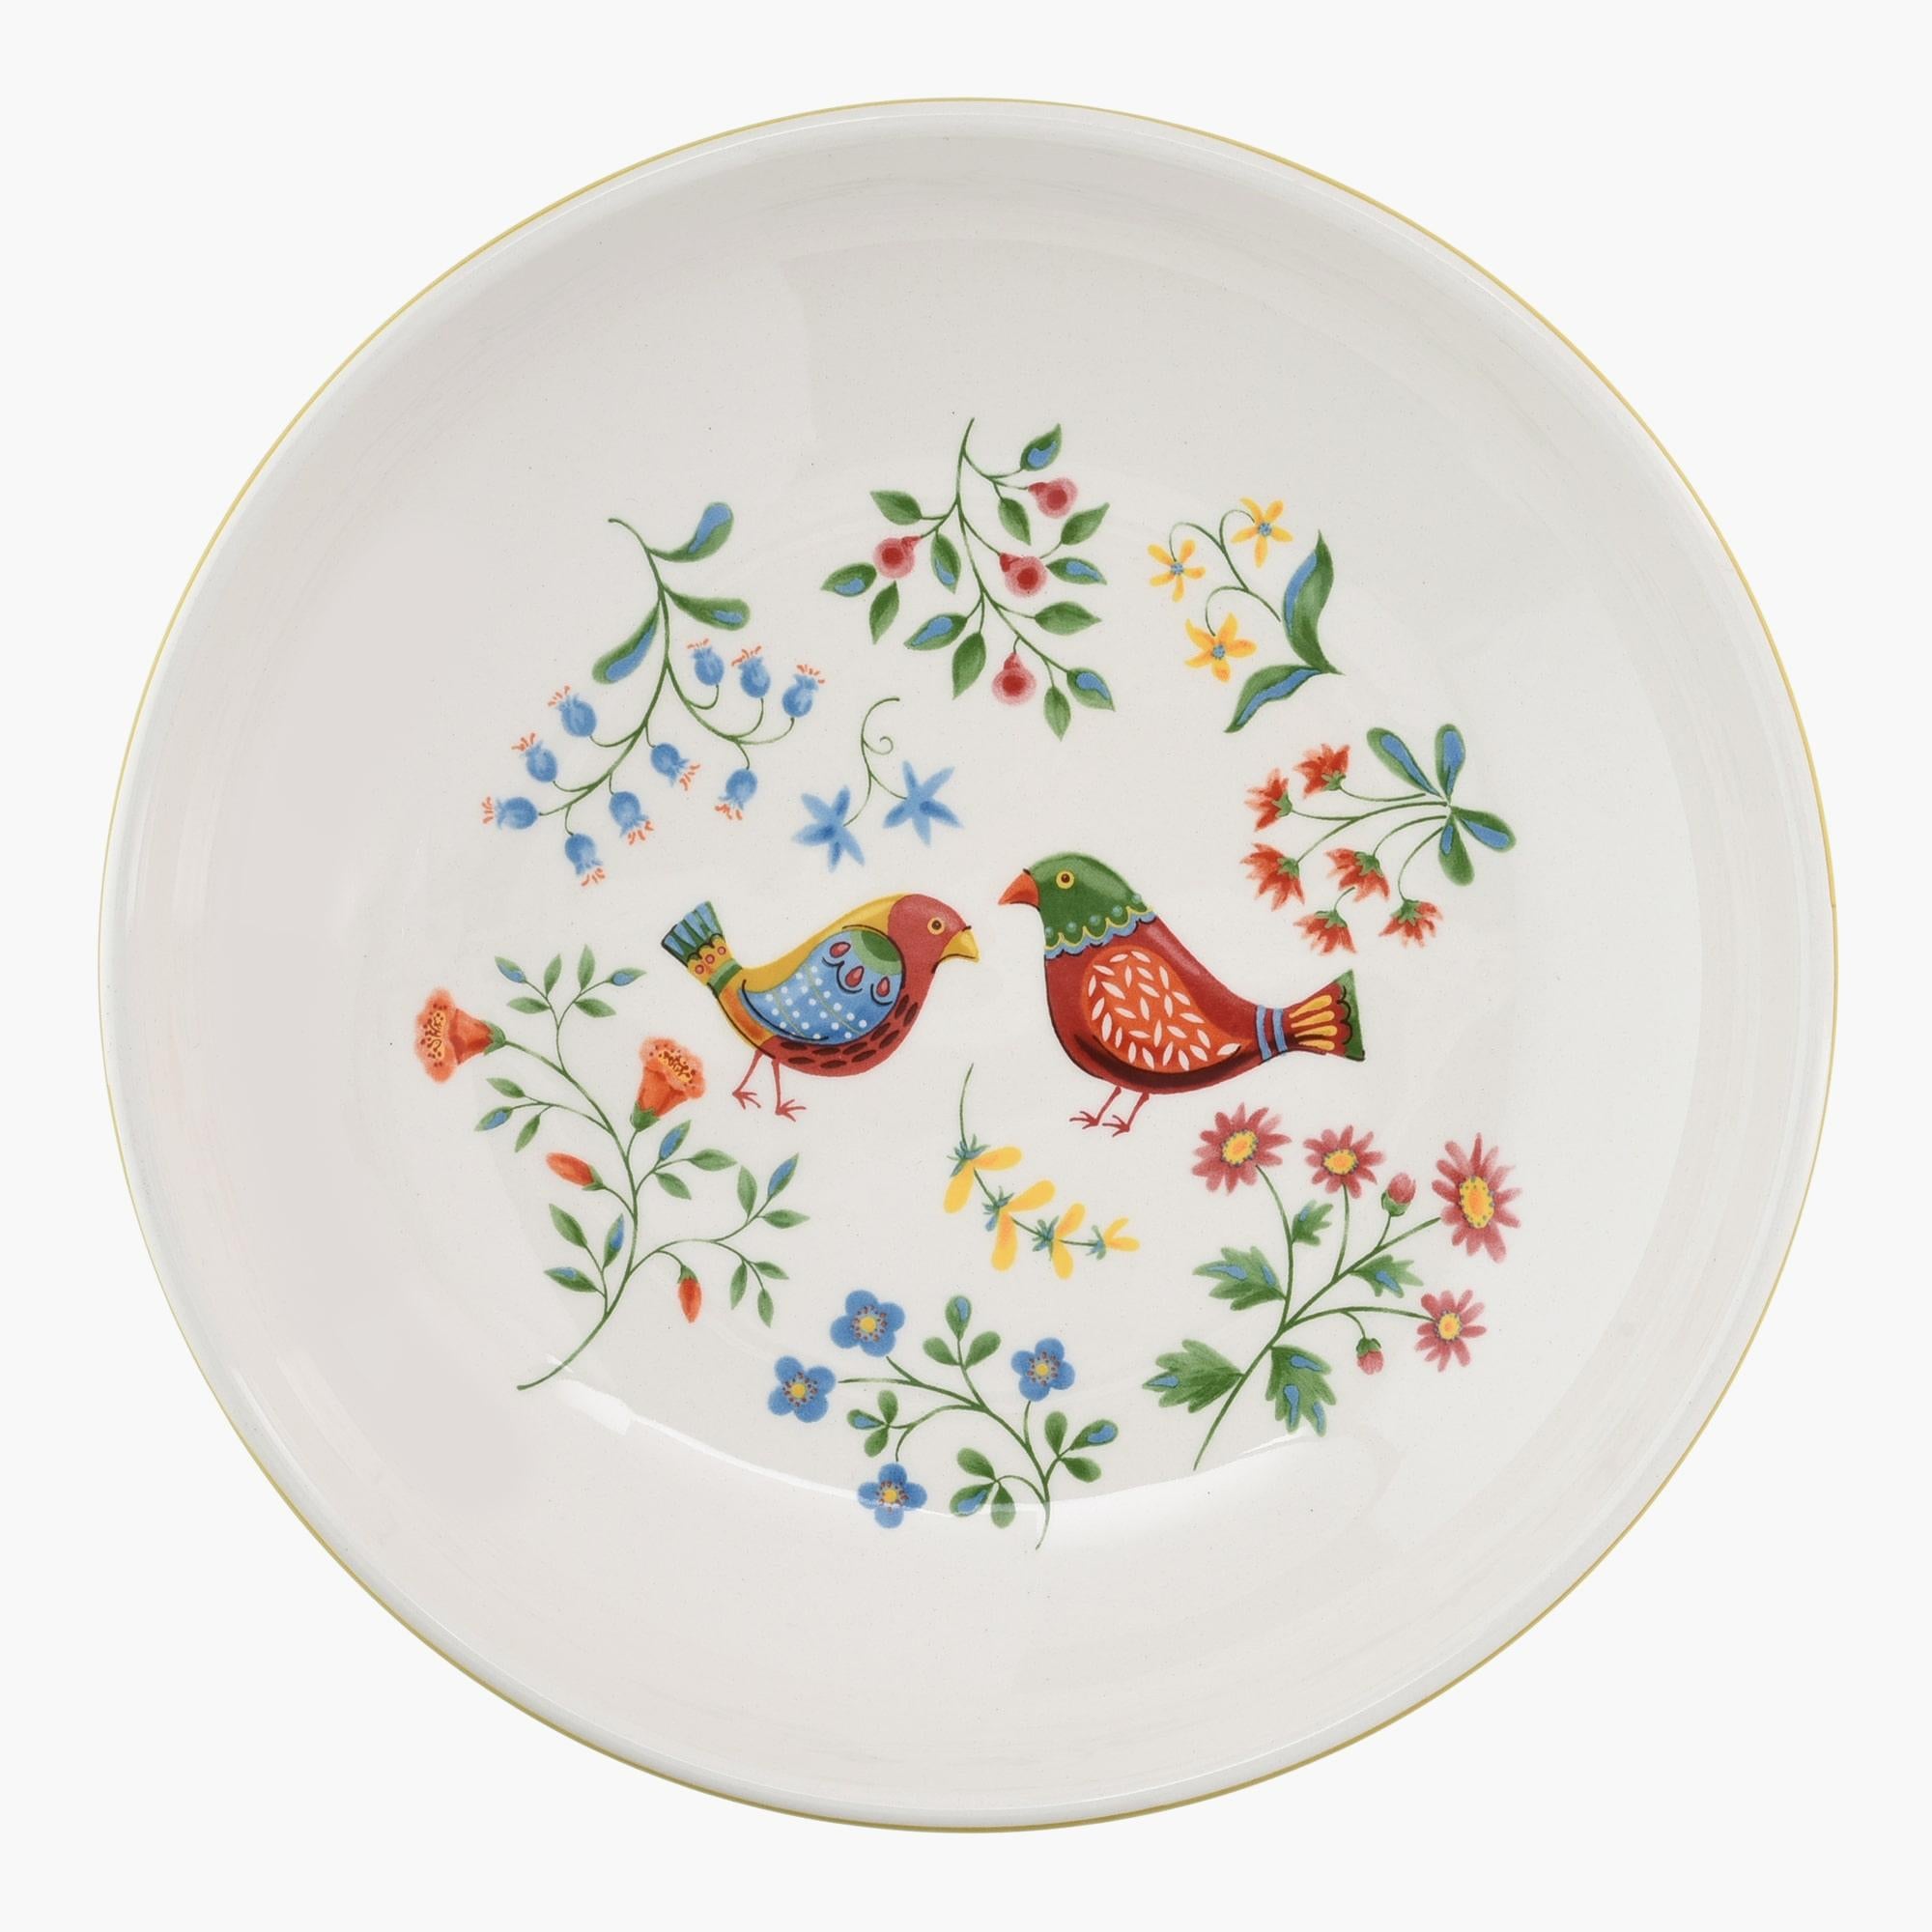 9-Inch Folk Art Inspired Ceramic Bowl - Set of Four